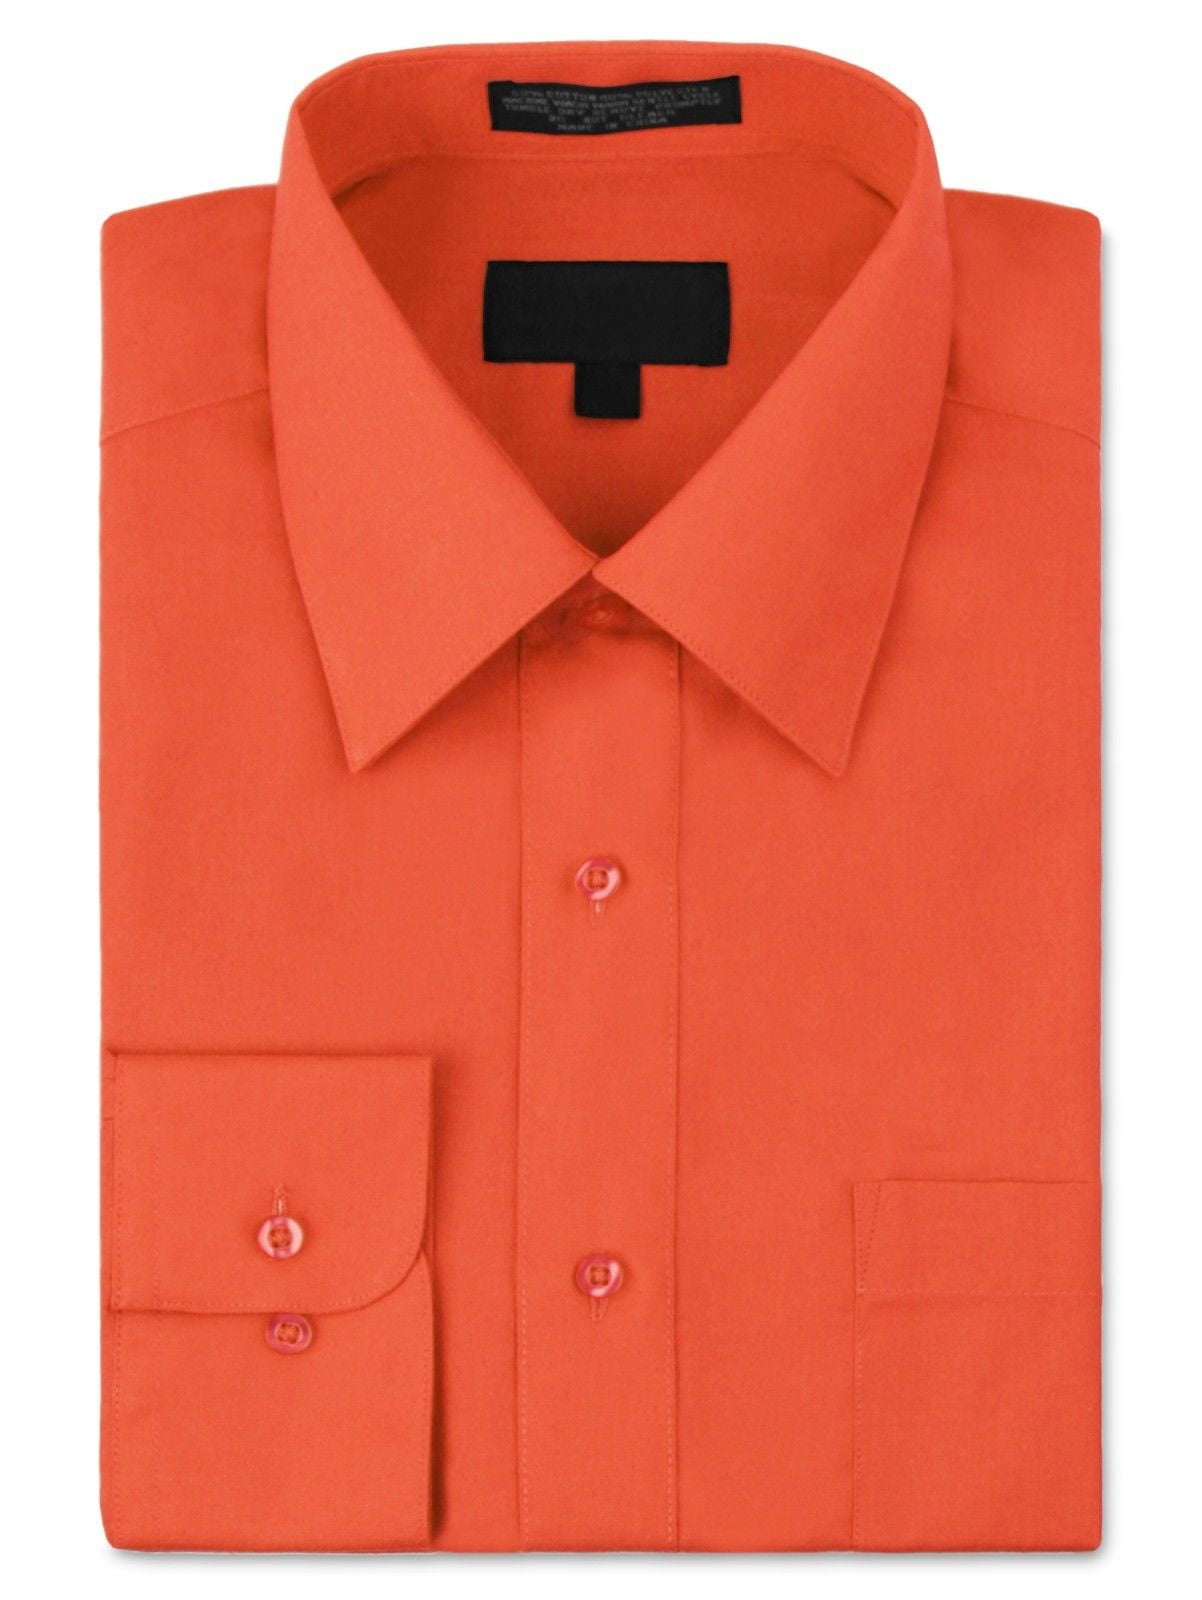 orange dress shirt